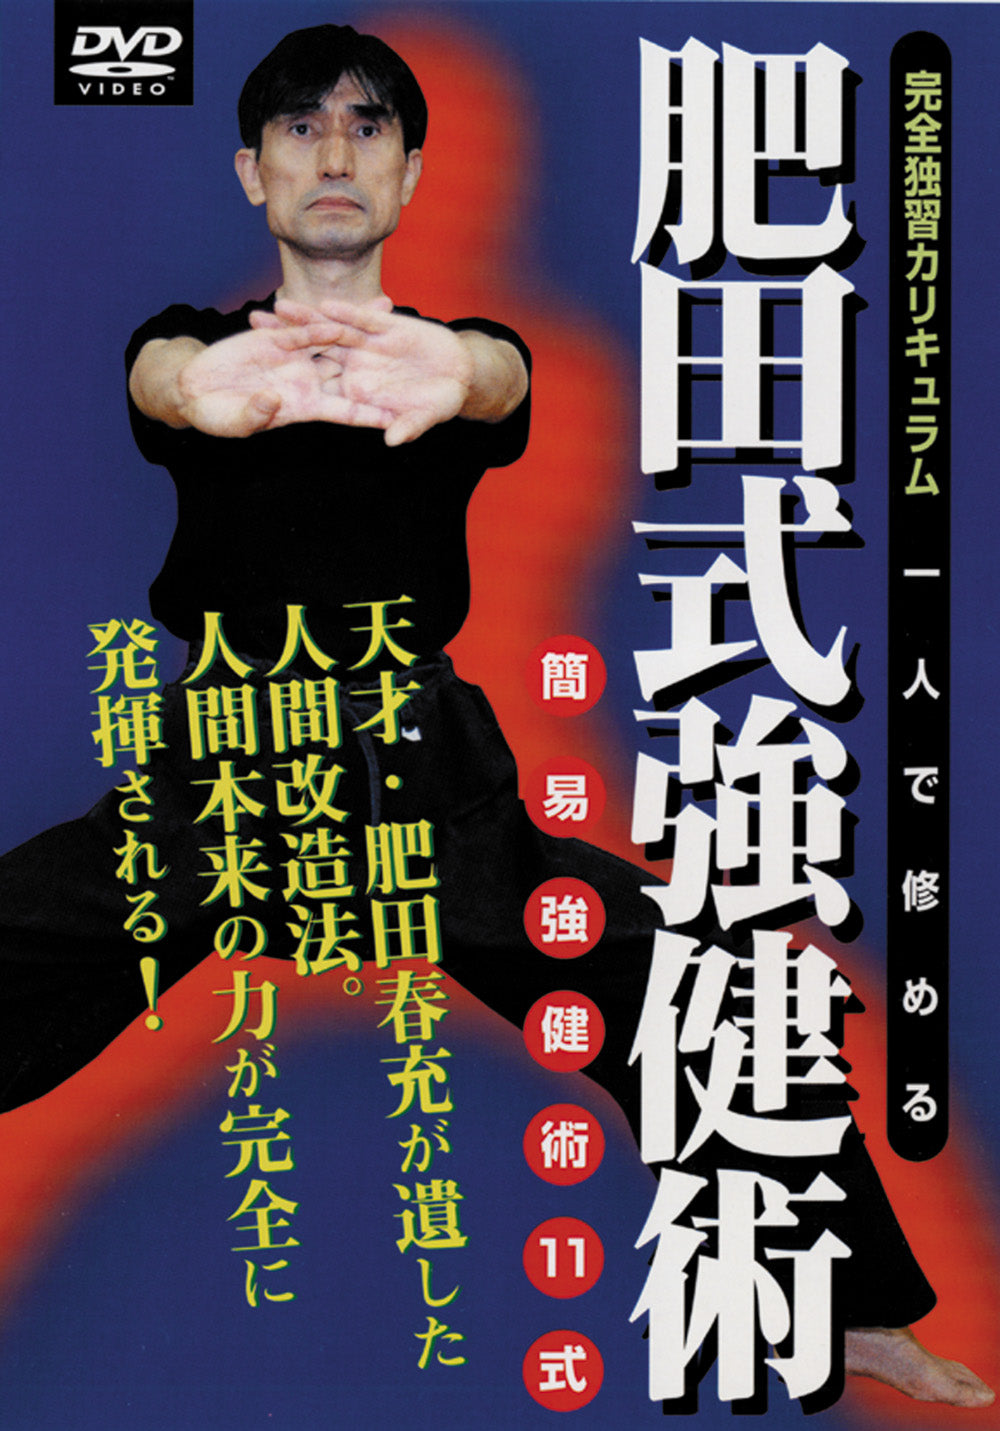 DVD del sistema de salud Hida de Mitsuya Suzuki